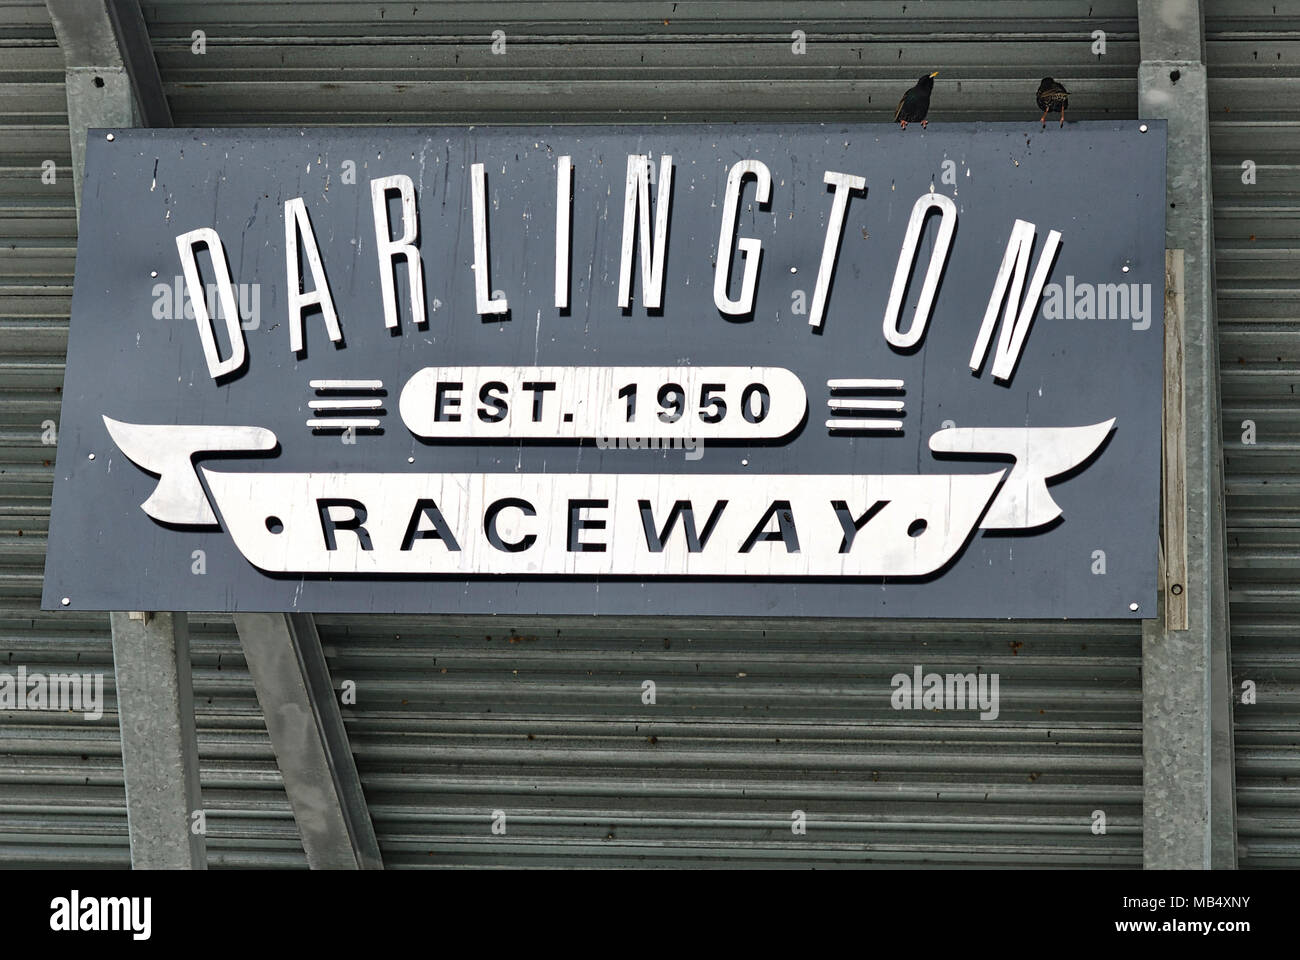 Darlington, en Caroline du Sud, USA - 25 mars 2018 : signe à Darlington Raceway, la plus ancienne piste pavée originale dans le circuit Nascar. Banque D'Images